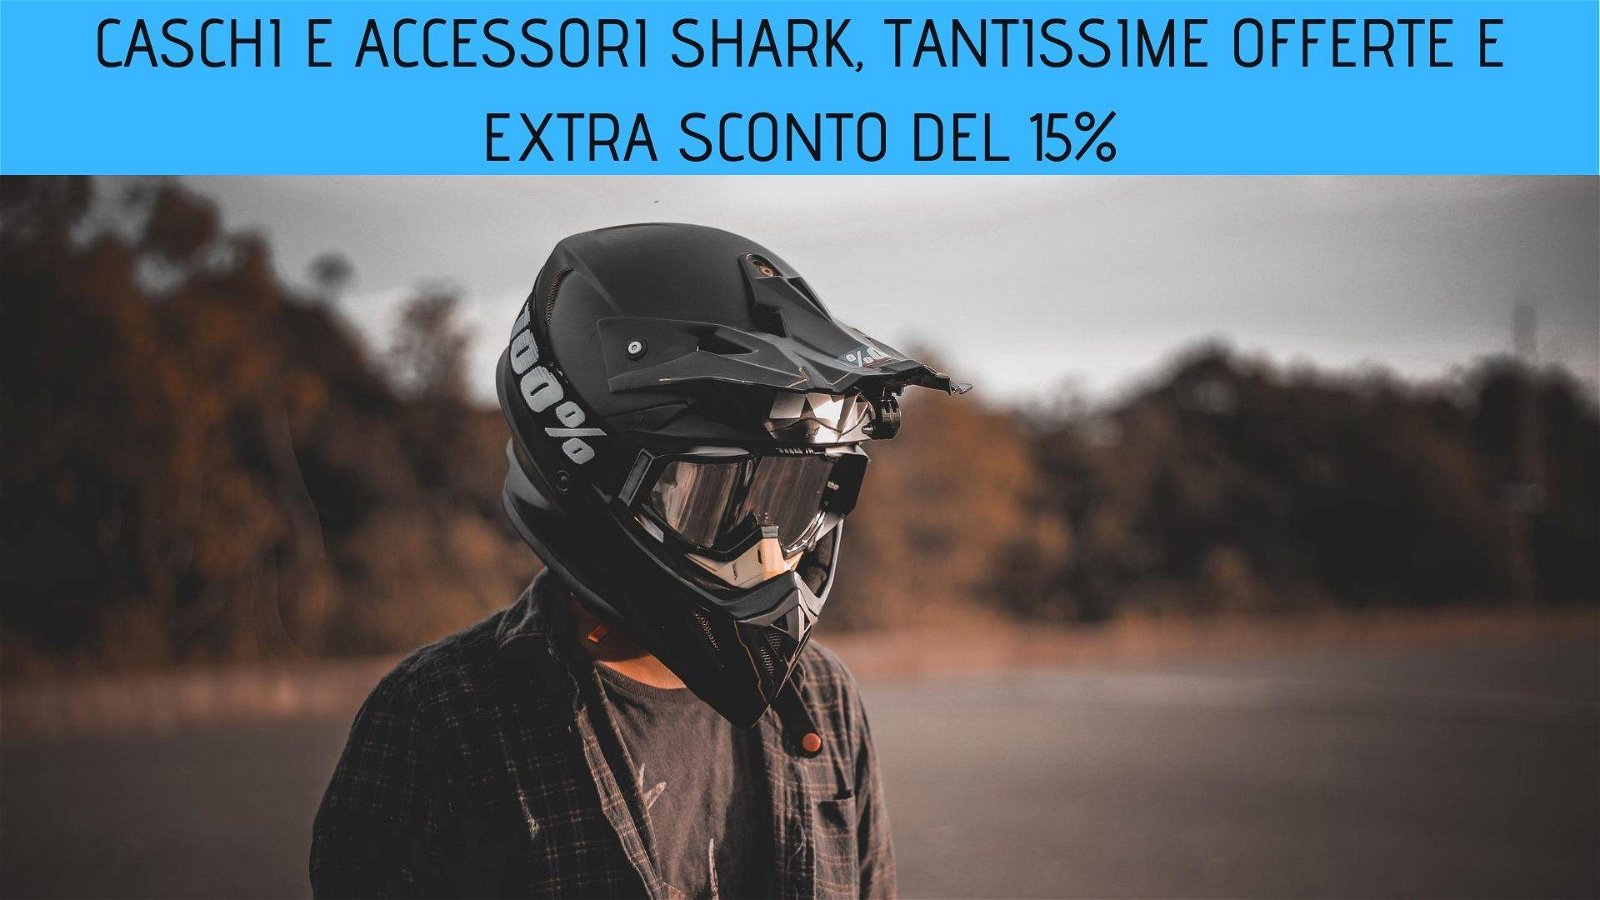 Immagine di Caschi e accessori Shark, tantissime offerte e extra sconto del 15%